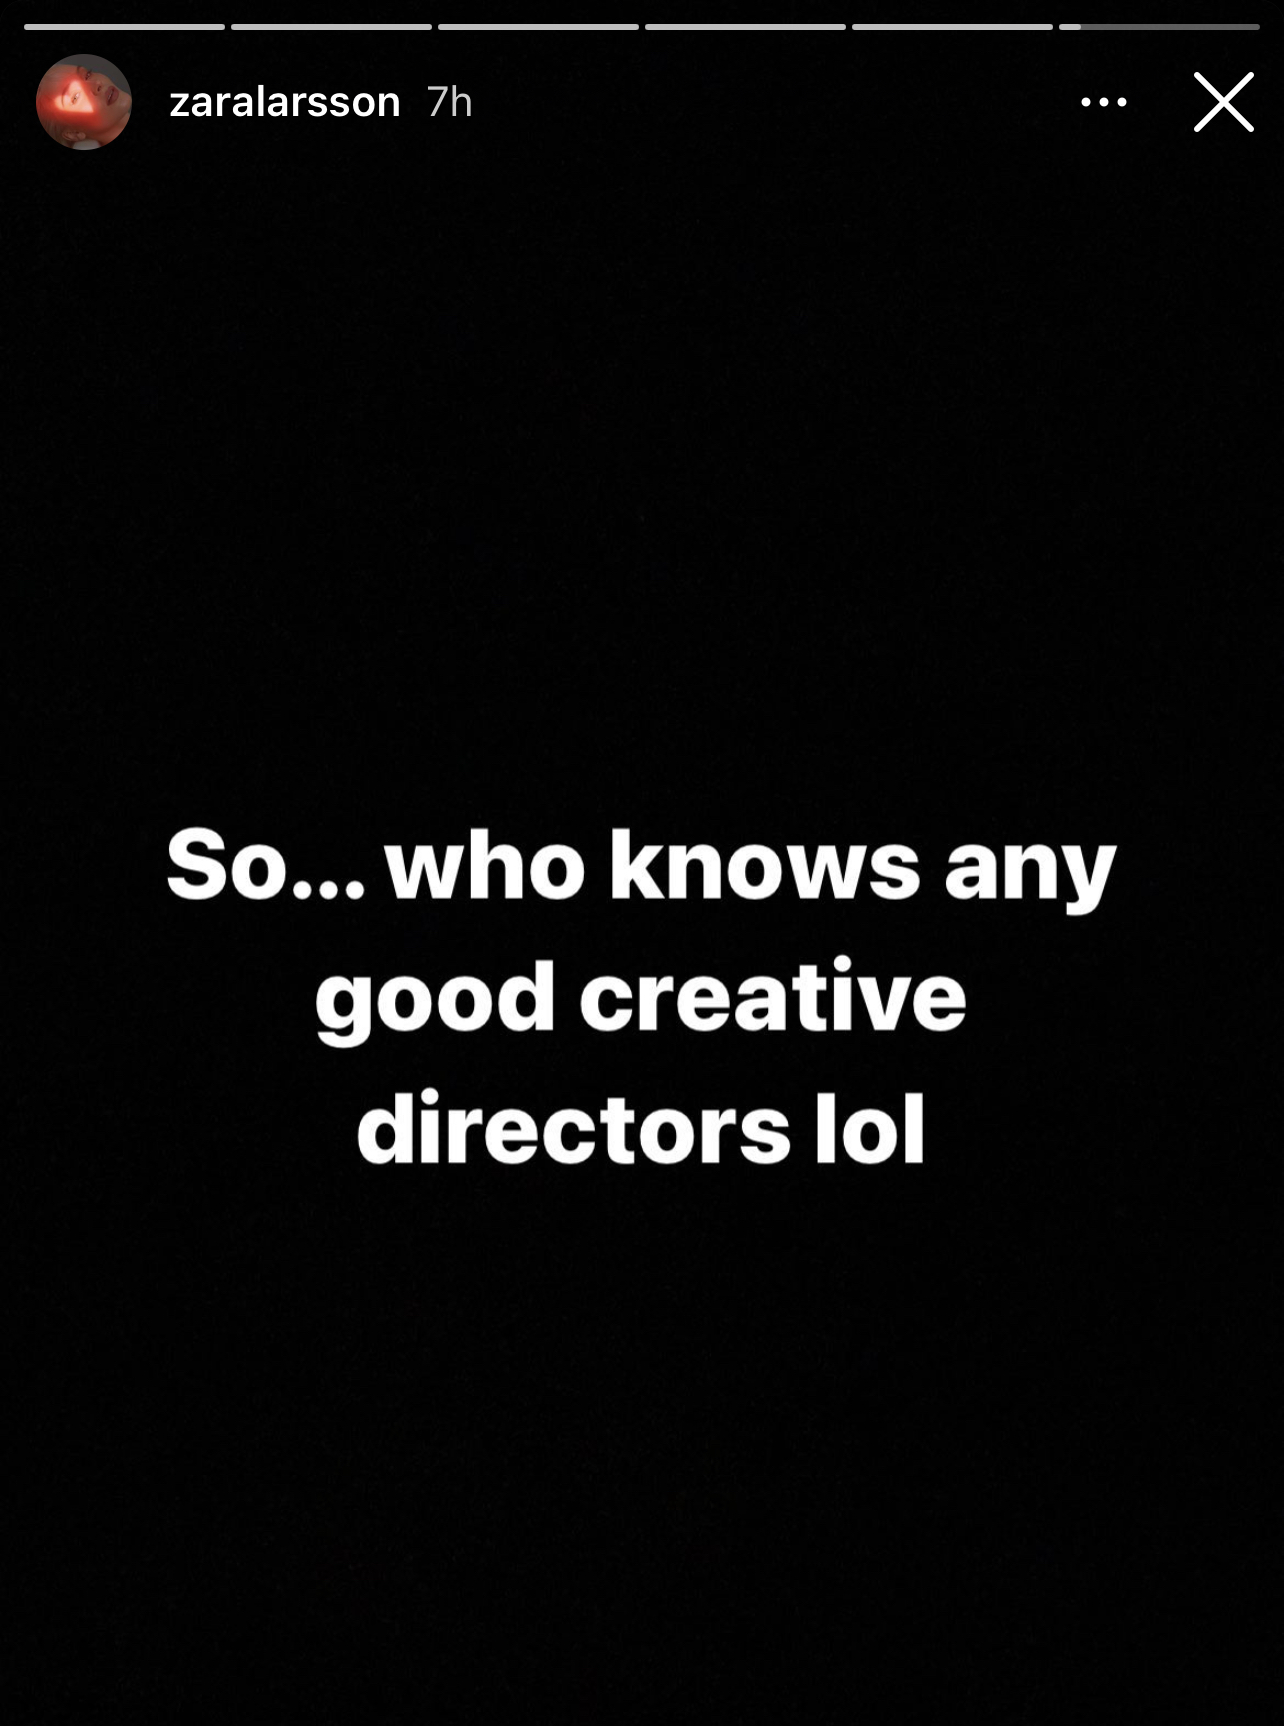 Zara: So....who knows any good creative directors lol?